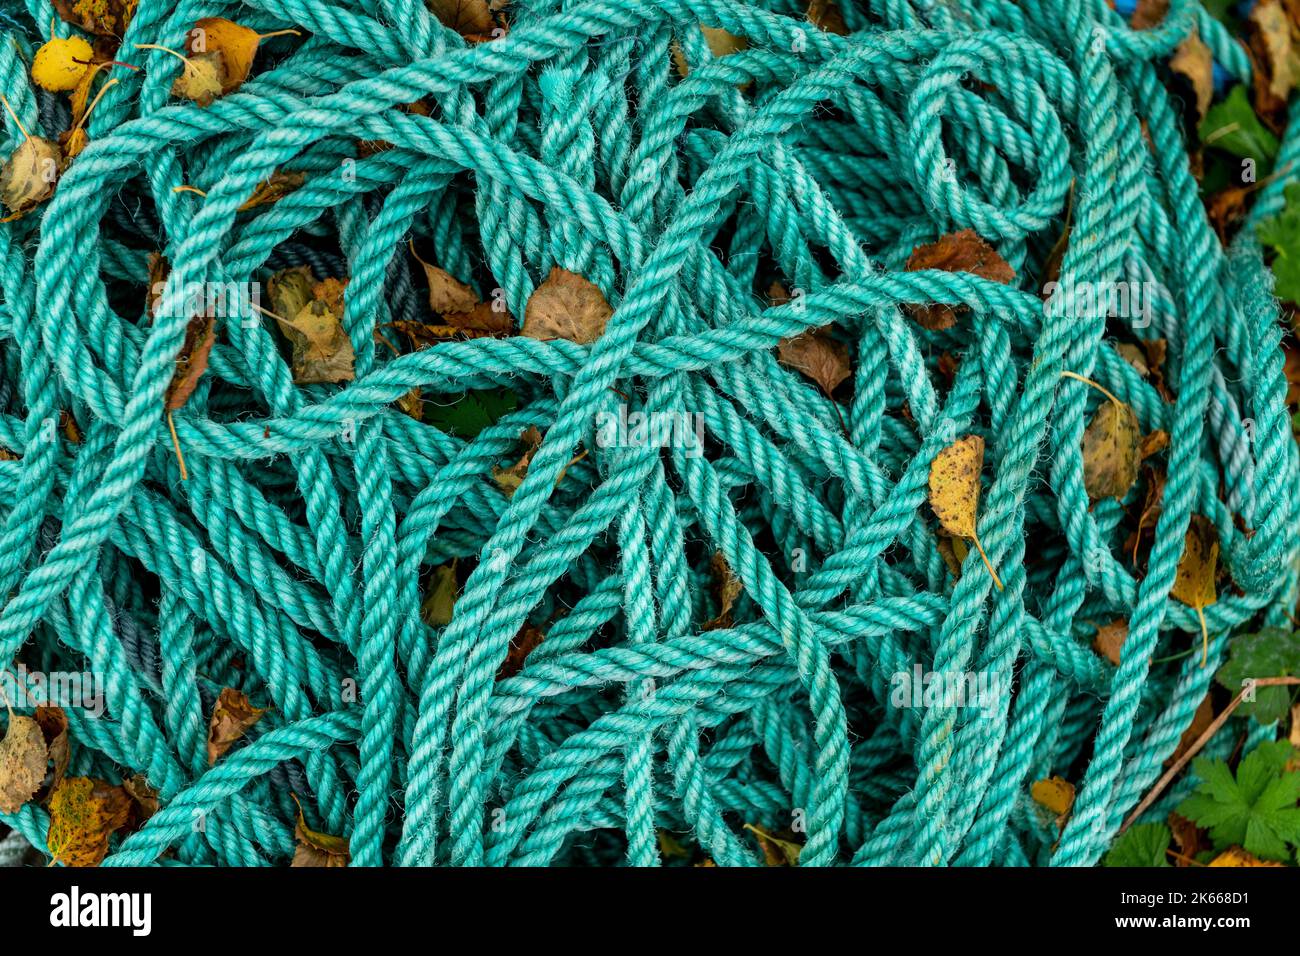 Arrière-plan de corde vert abstrait - photo de stock Banque D'Images